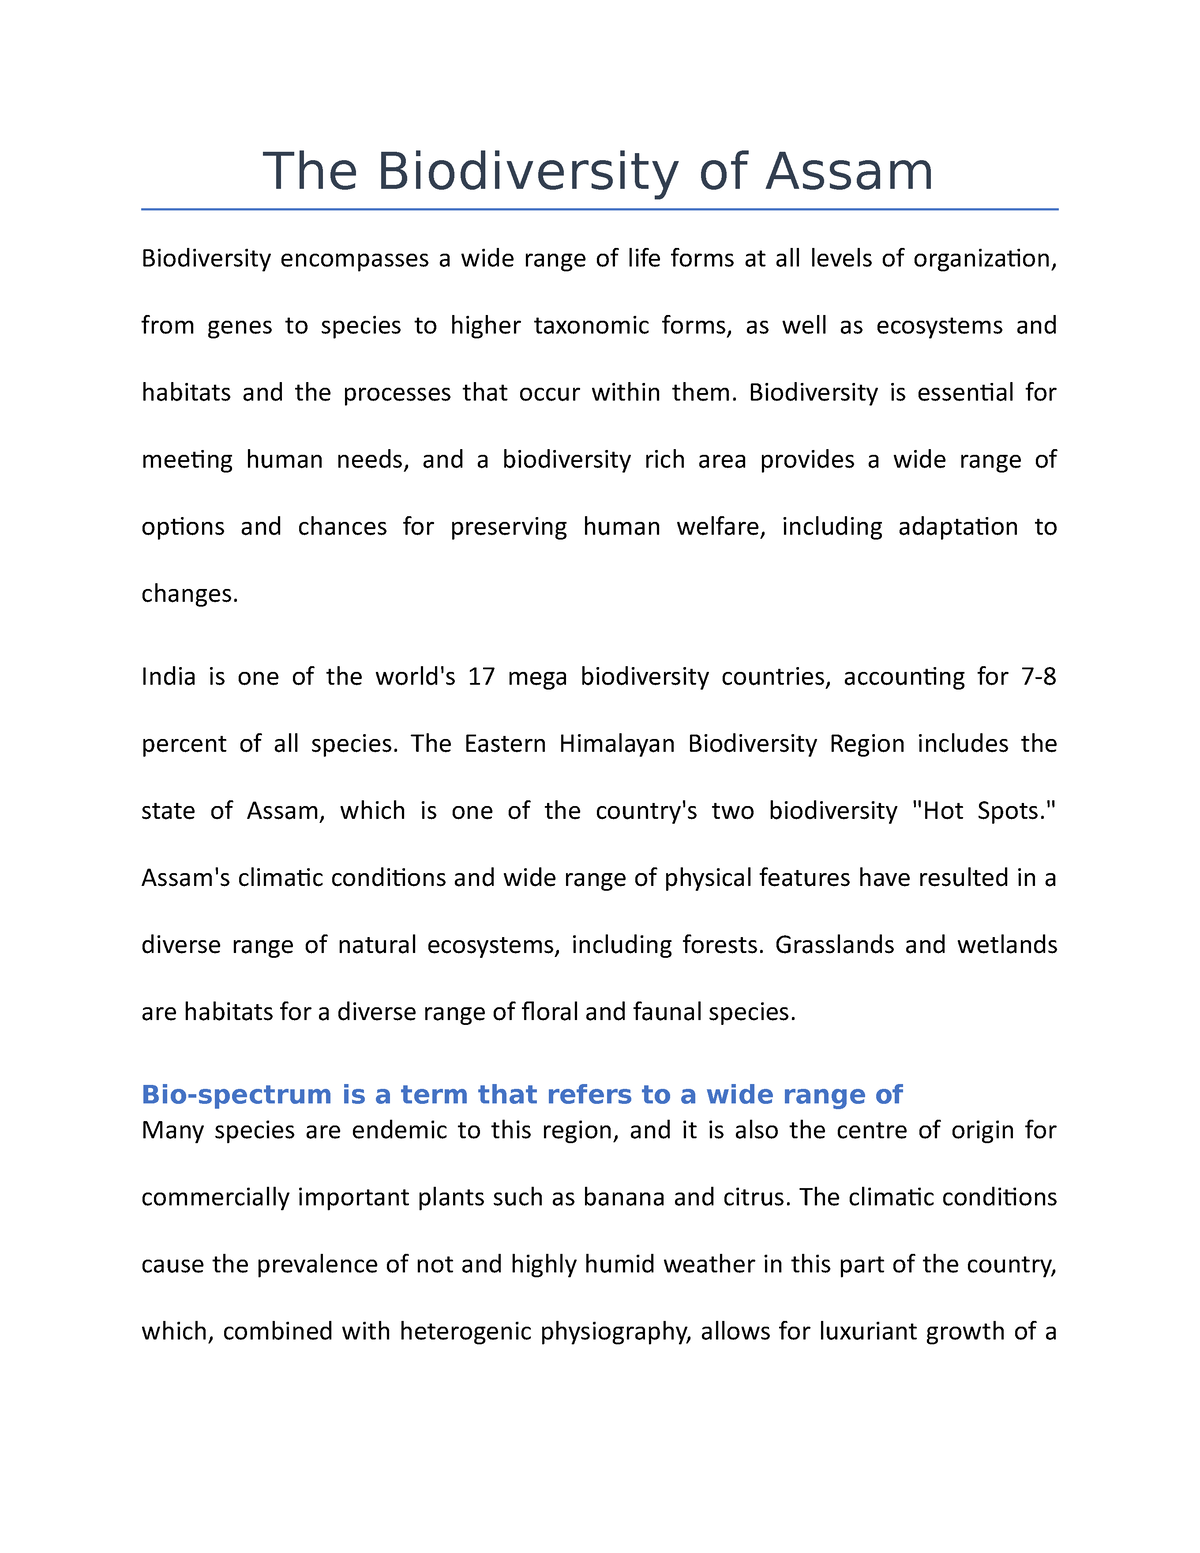 biodiversity of assam essay